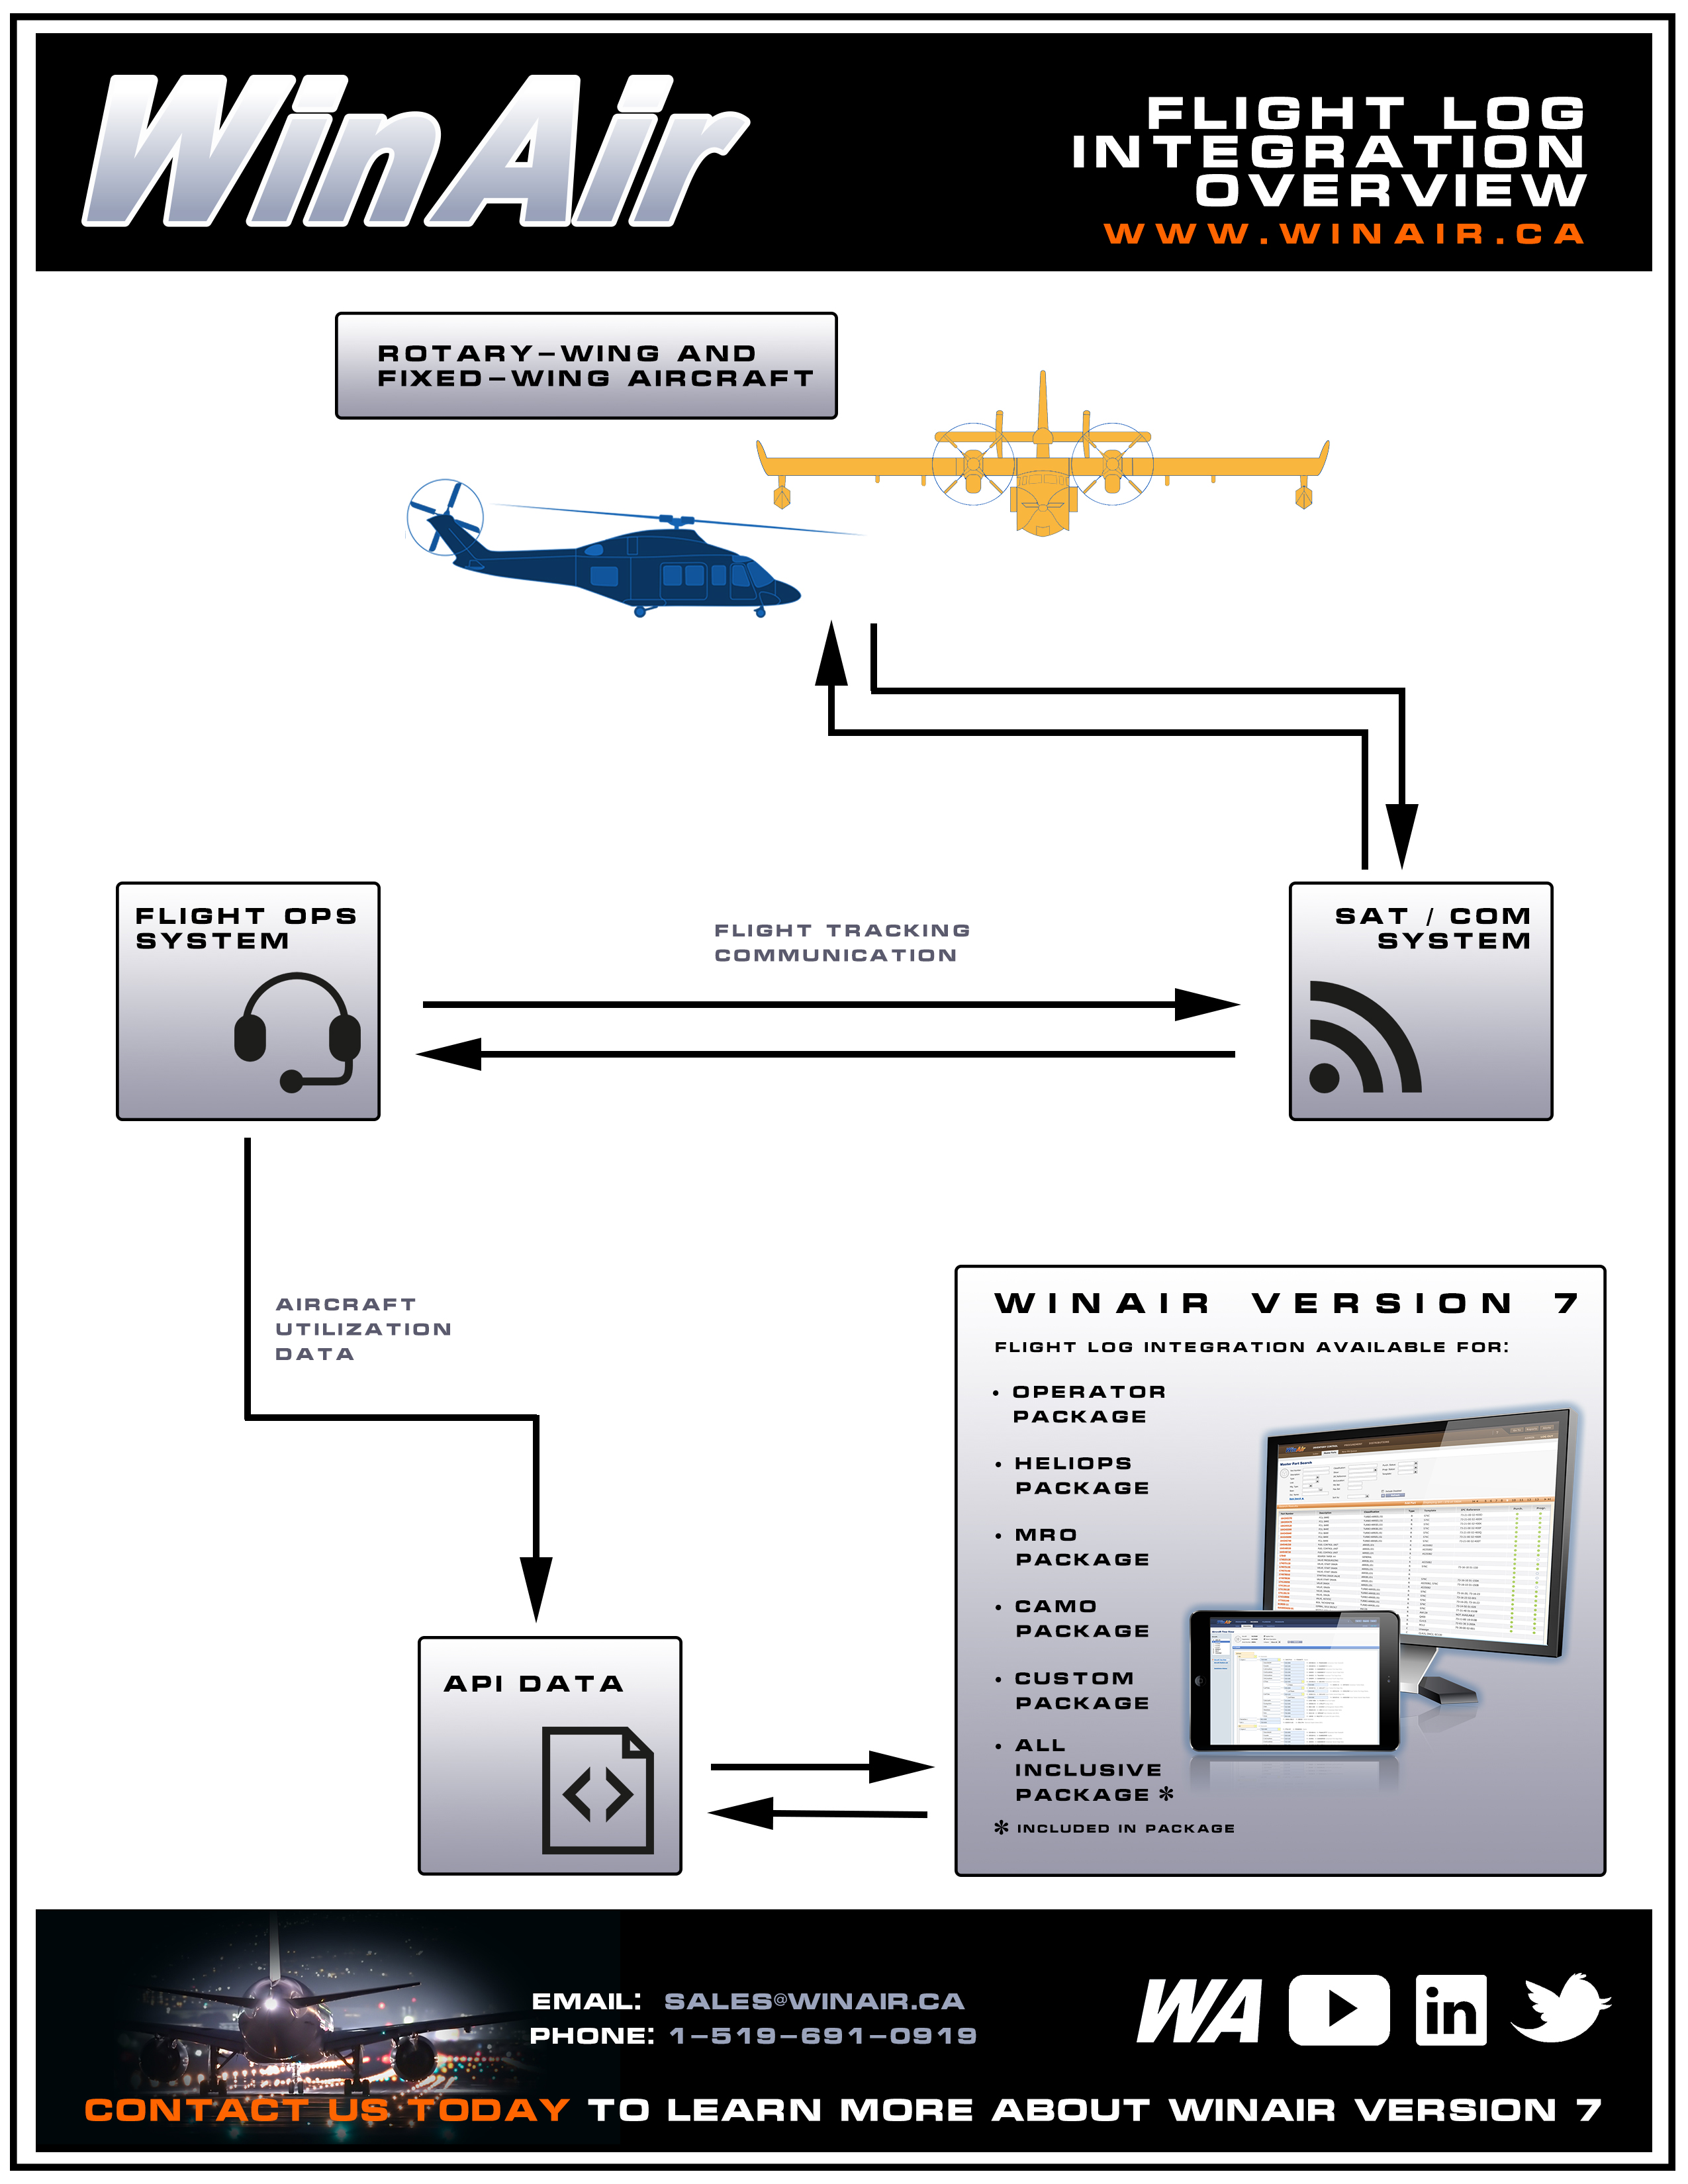 WinAir - Aviation Management Software - Flight Log Integration Overview Document